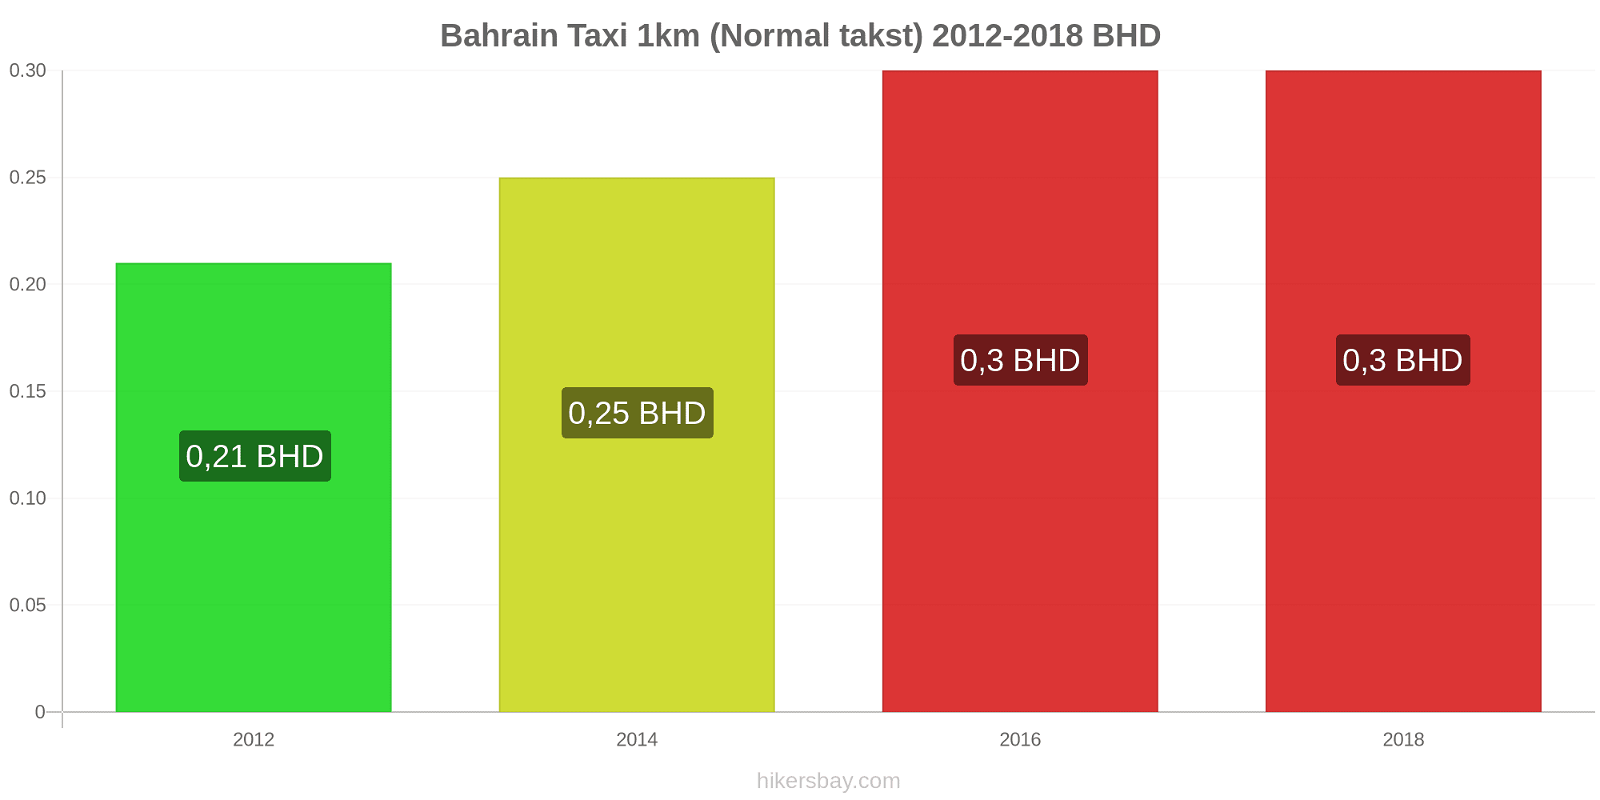 Bahrain prisændringer Taxi 1km (normal takst) hikersbay.com